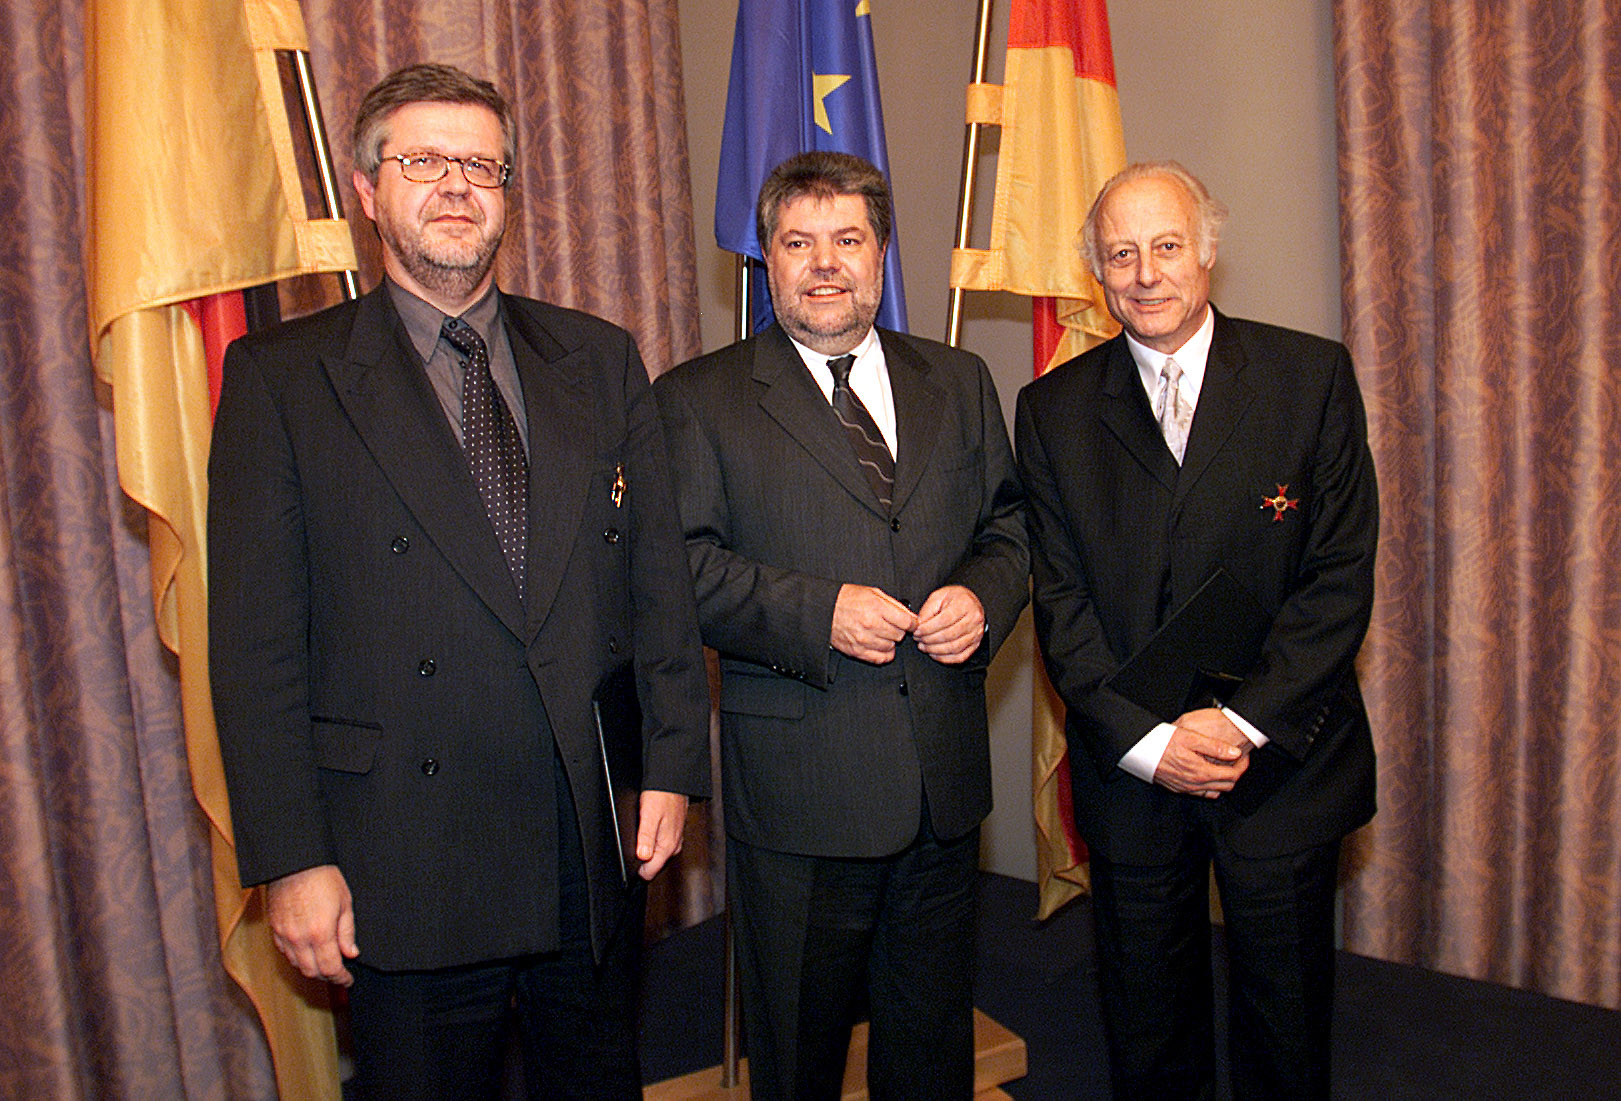 Ehrung mit dem Landesverdienstorden v.l.n.r. Professor Dieter Rombach, Kurt Beck und Professor Helmut Neunzert.